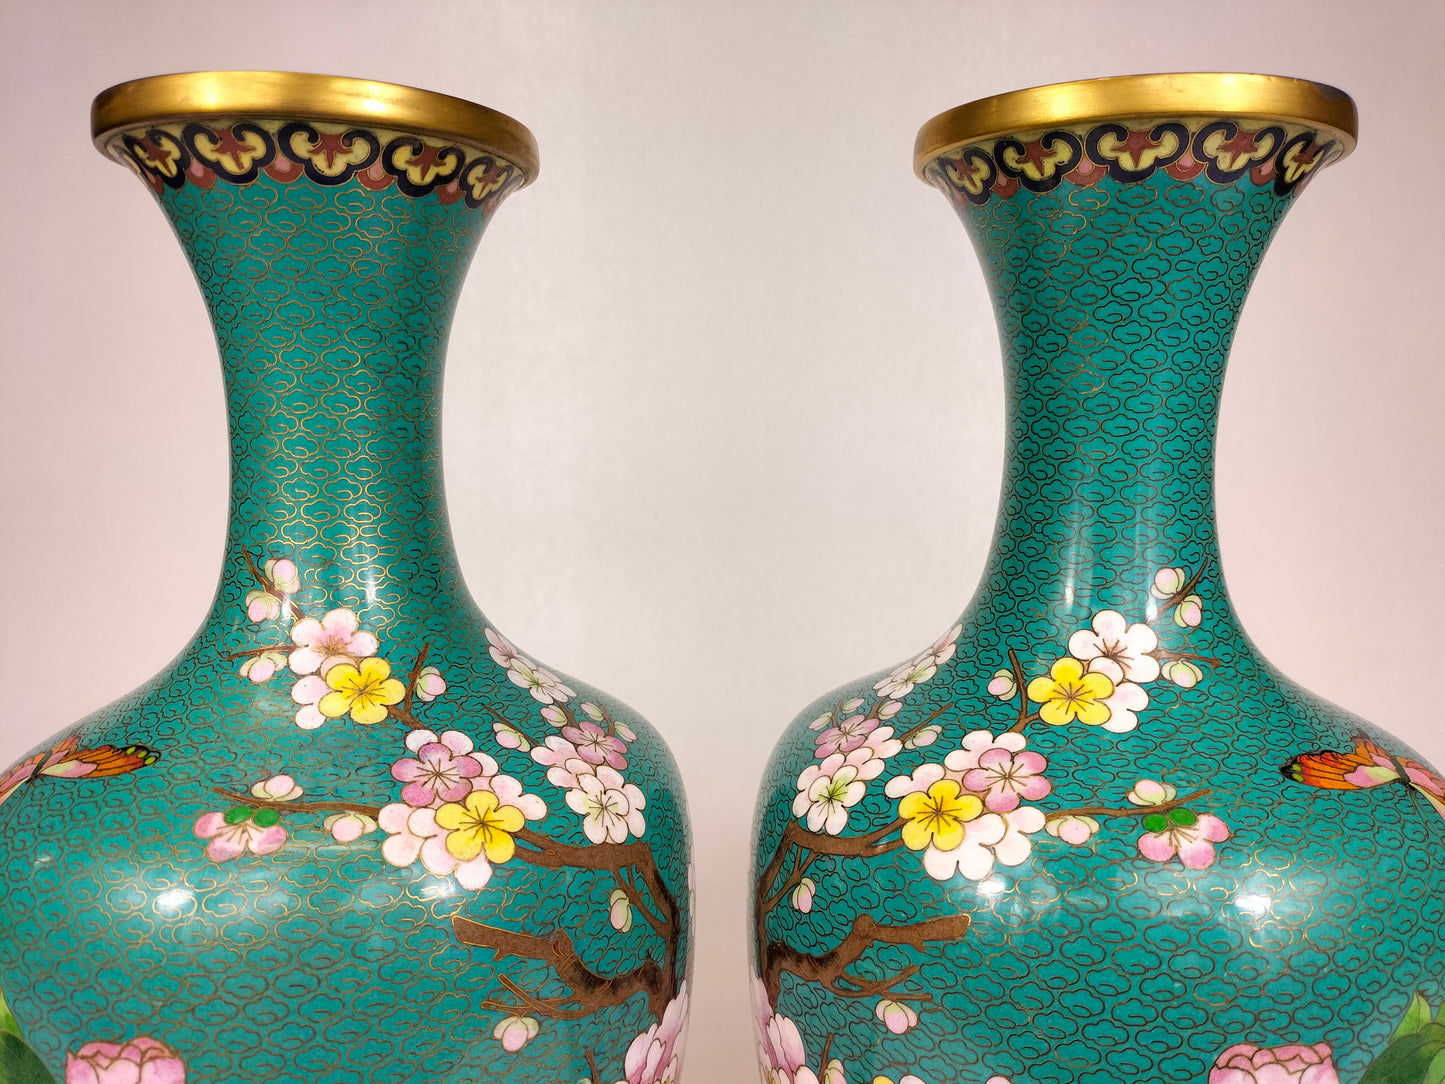 一对大型中国景泰蓝花卉花瓶// 20 世纪